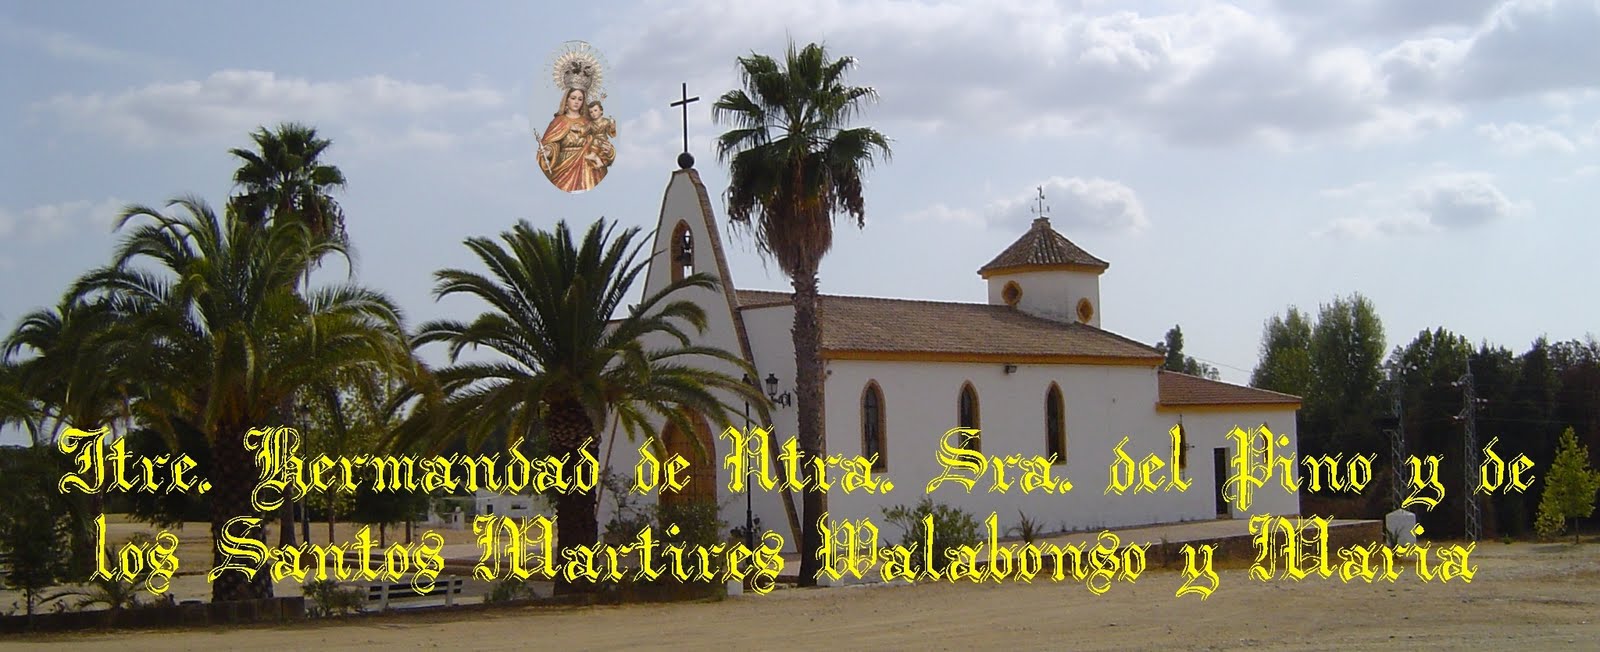 Ilustrísima Hermandad de Nuestra Señora del Pino y los Santos Mártires Walabonso y María